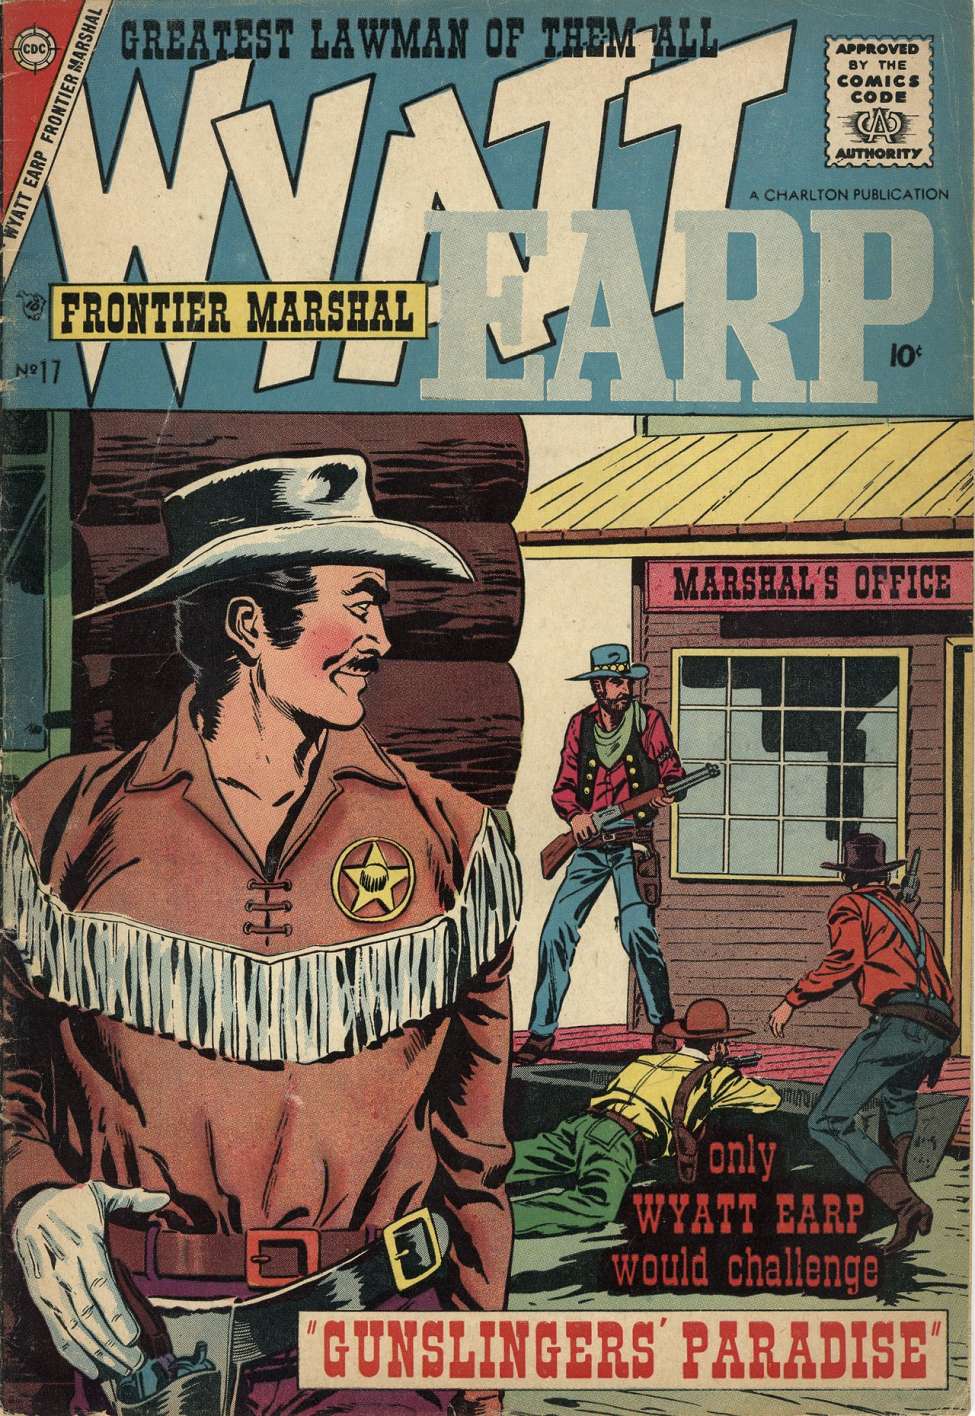 Book Cover For Wyatt Earp Frontier Marshal 17